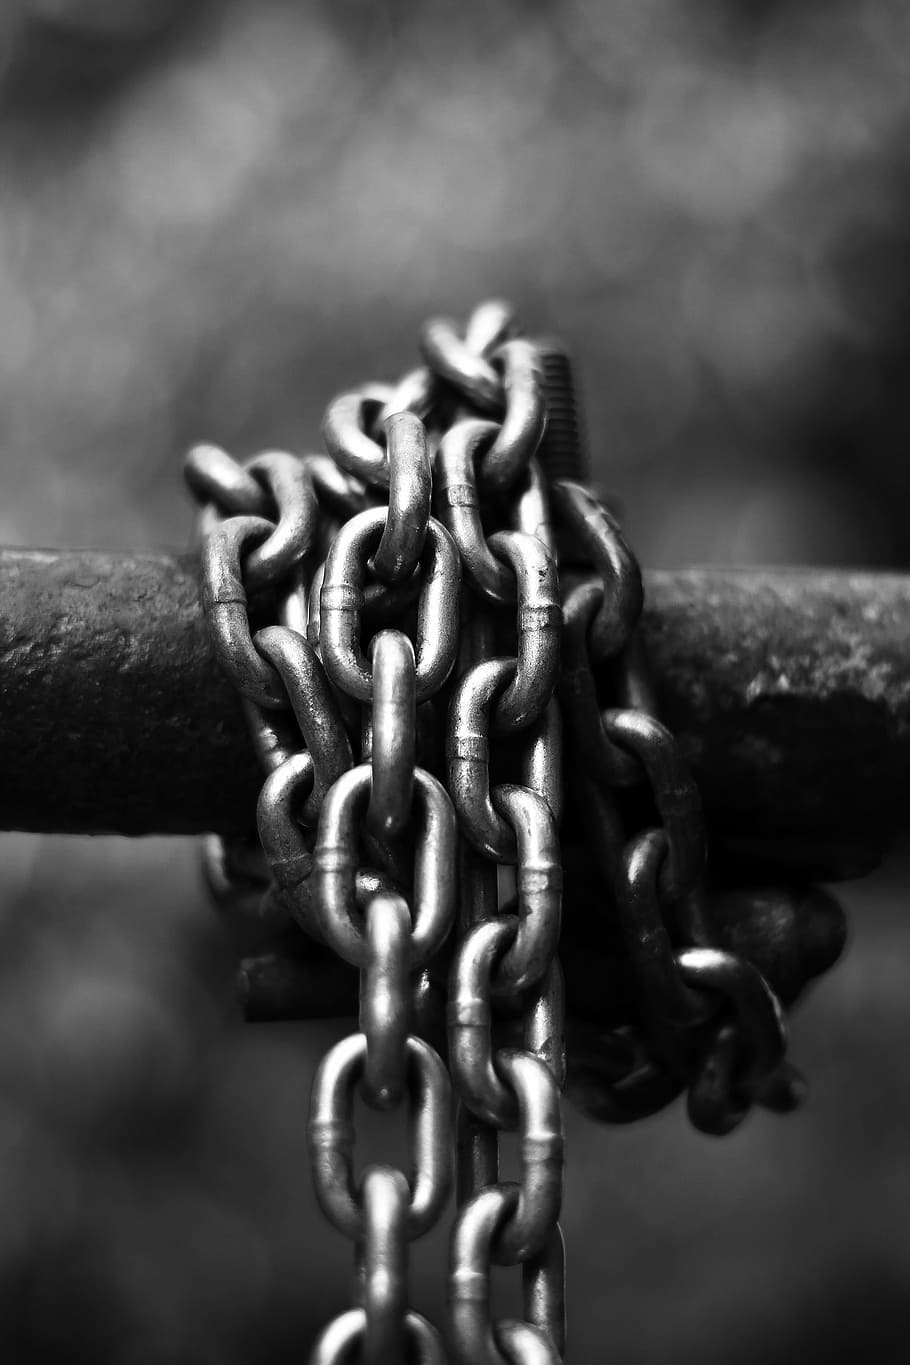 foto en escala de grises, atado, cadena, hierro, acero, vertical, al aire libre, escalada, fuerza, blanco y negro